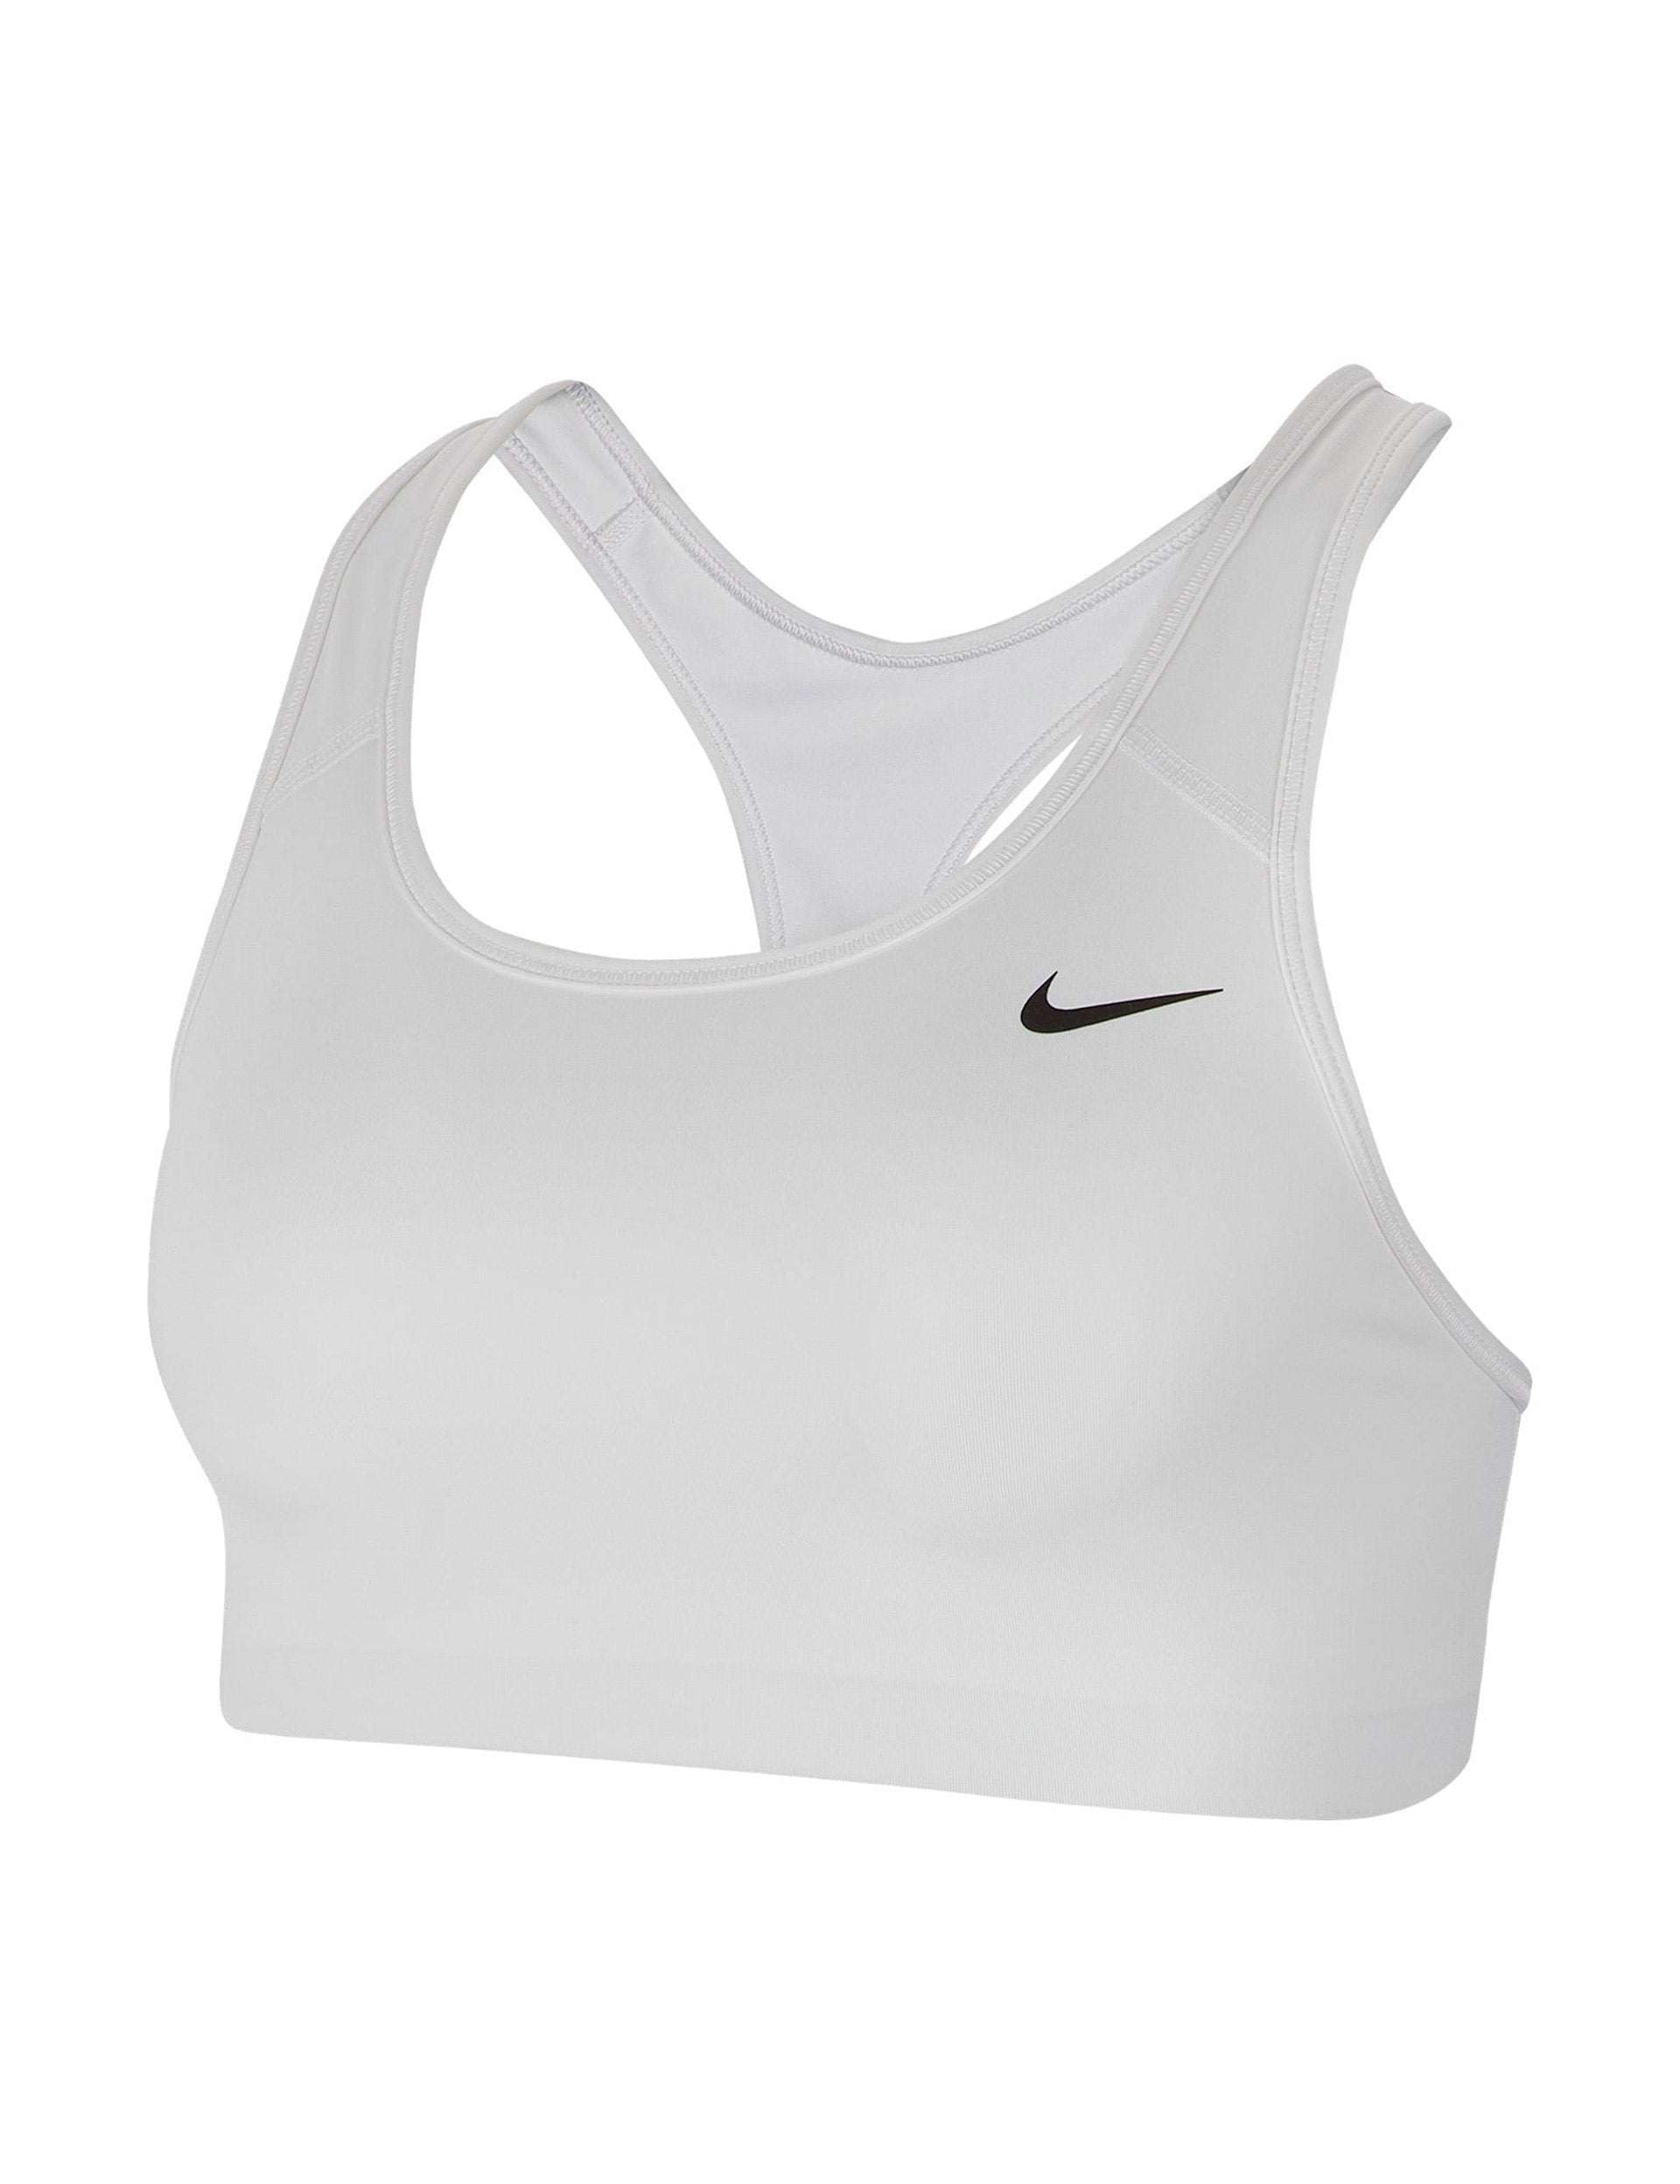 Swoosh Dri-FIT recycled sports bra